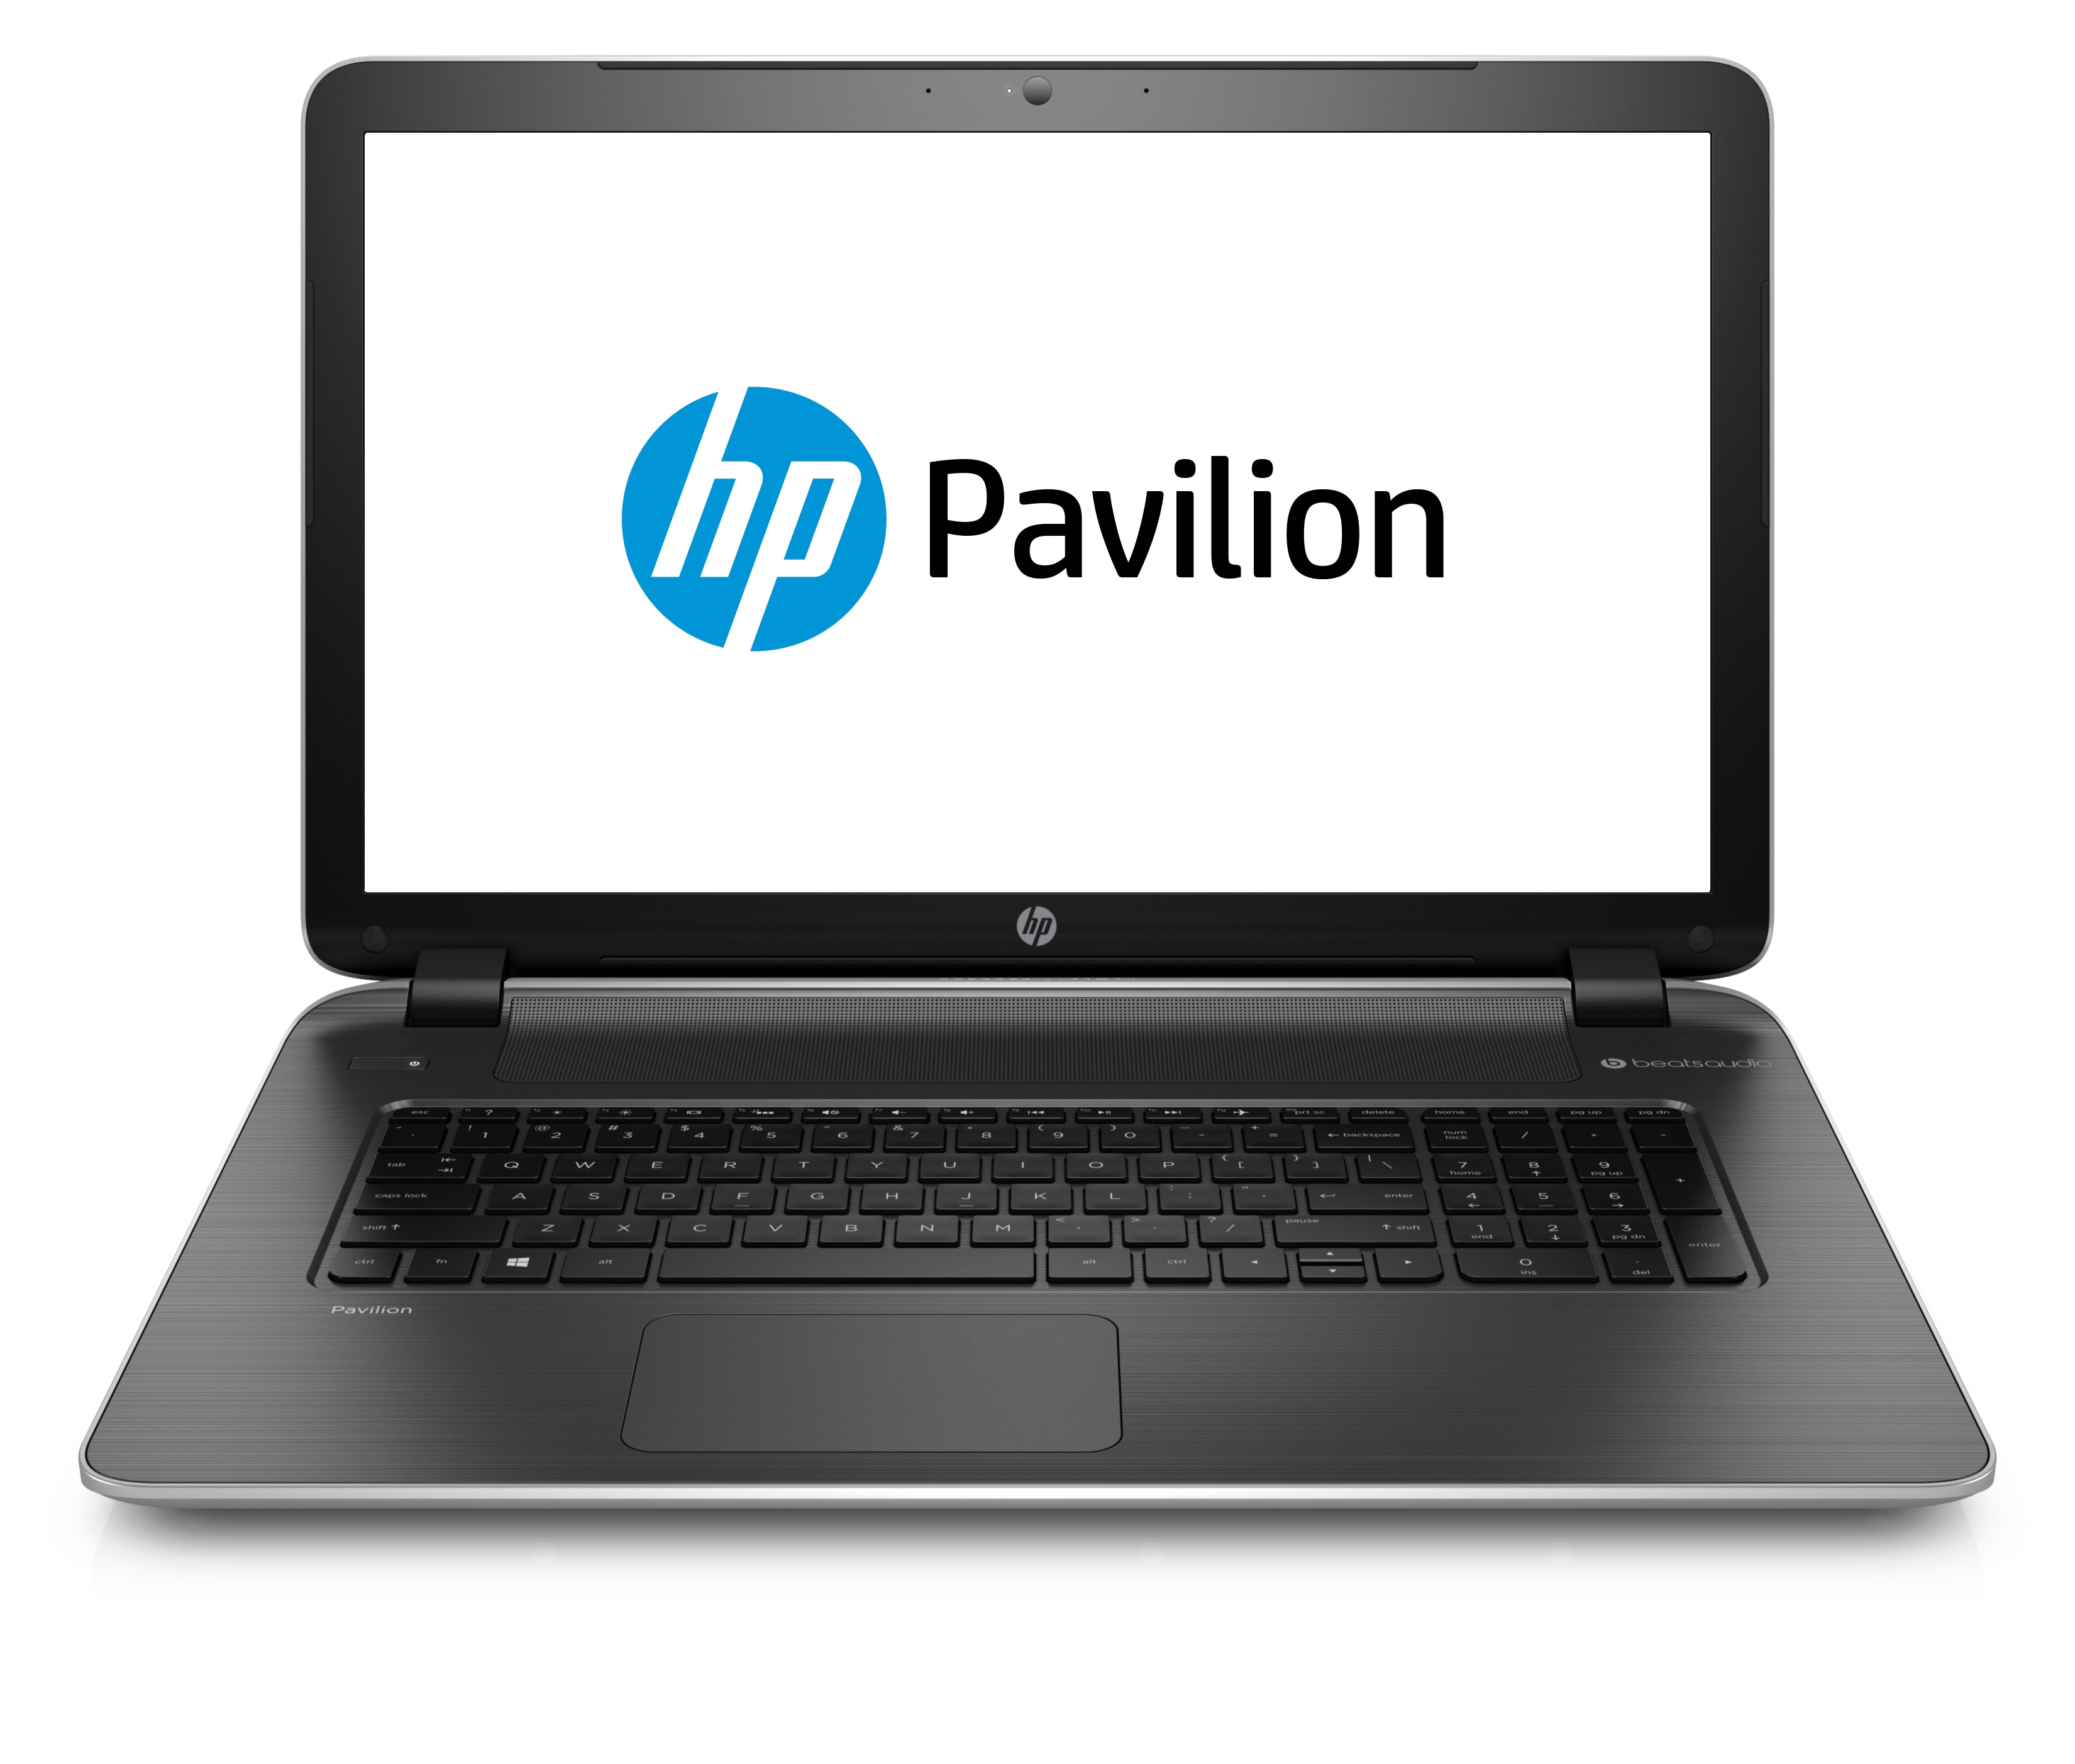 Laptop HP Pavilion 17-f045nb, AMD A8-6410 2.00GHz, 4GB DDR3, 500GB SATA, Placa video Radeon R5, 17.3 Inch, Tastatura Numerica, Webcam, DVD-RW